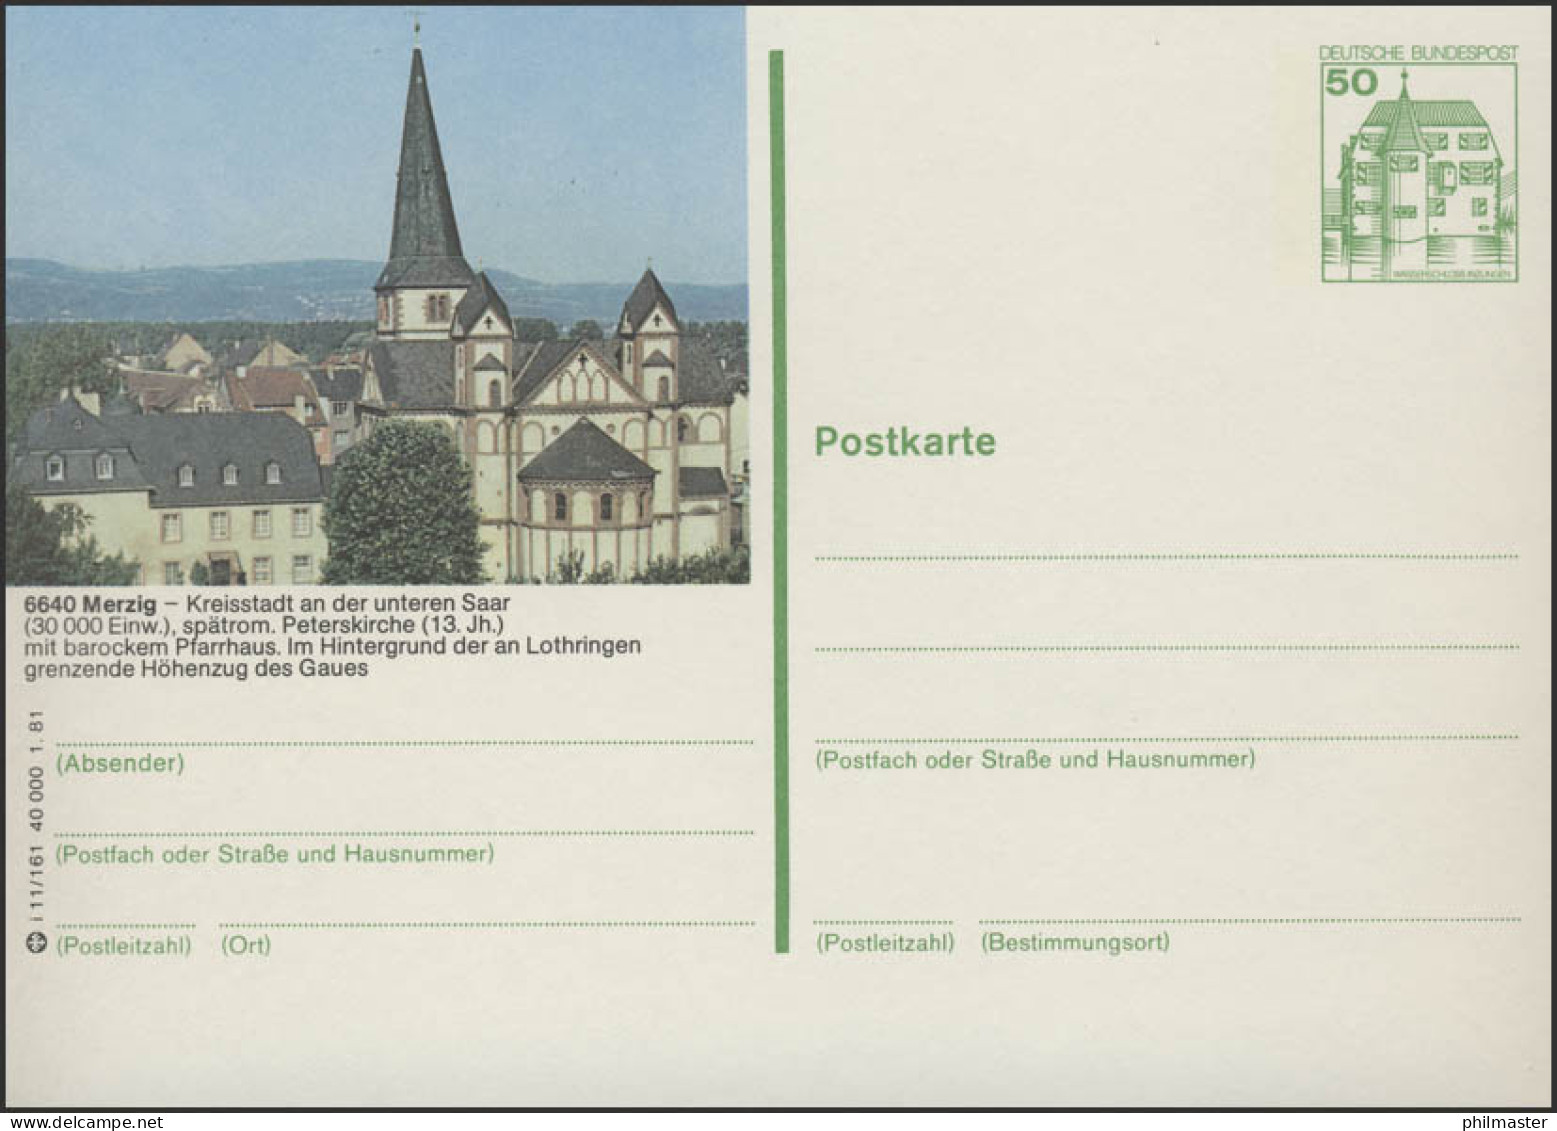 P134-i11/161 - 6640 Merzig, St.-Peter-Kirche ** - Geïllustreerde Postkaarten - Ongebruikt